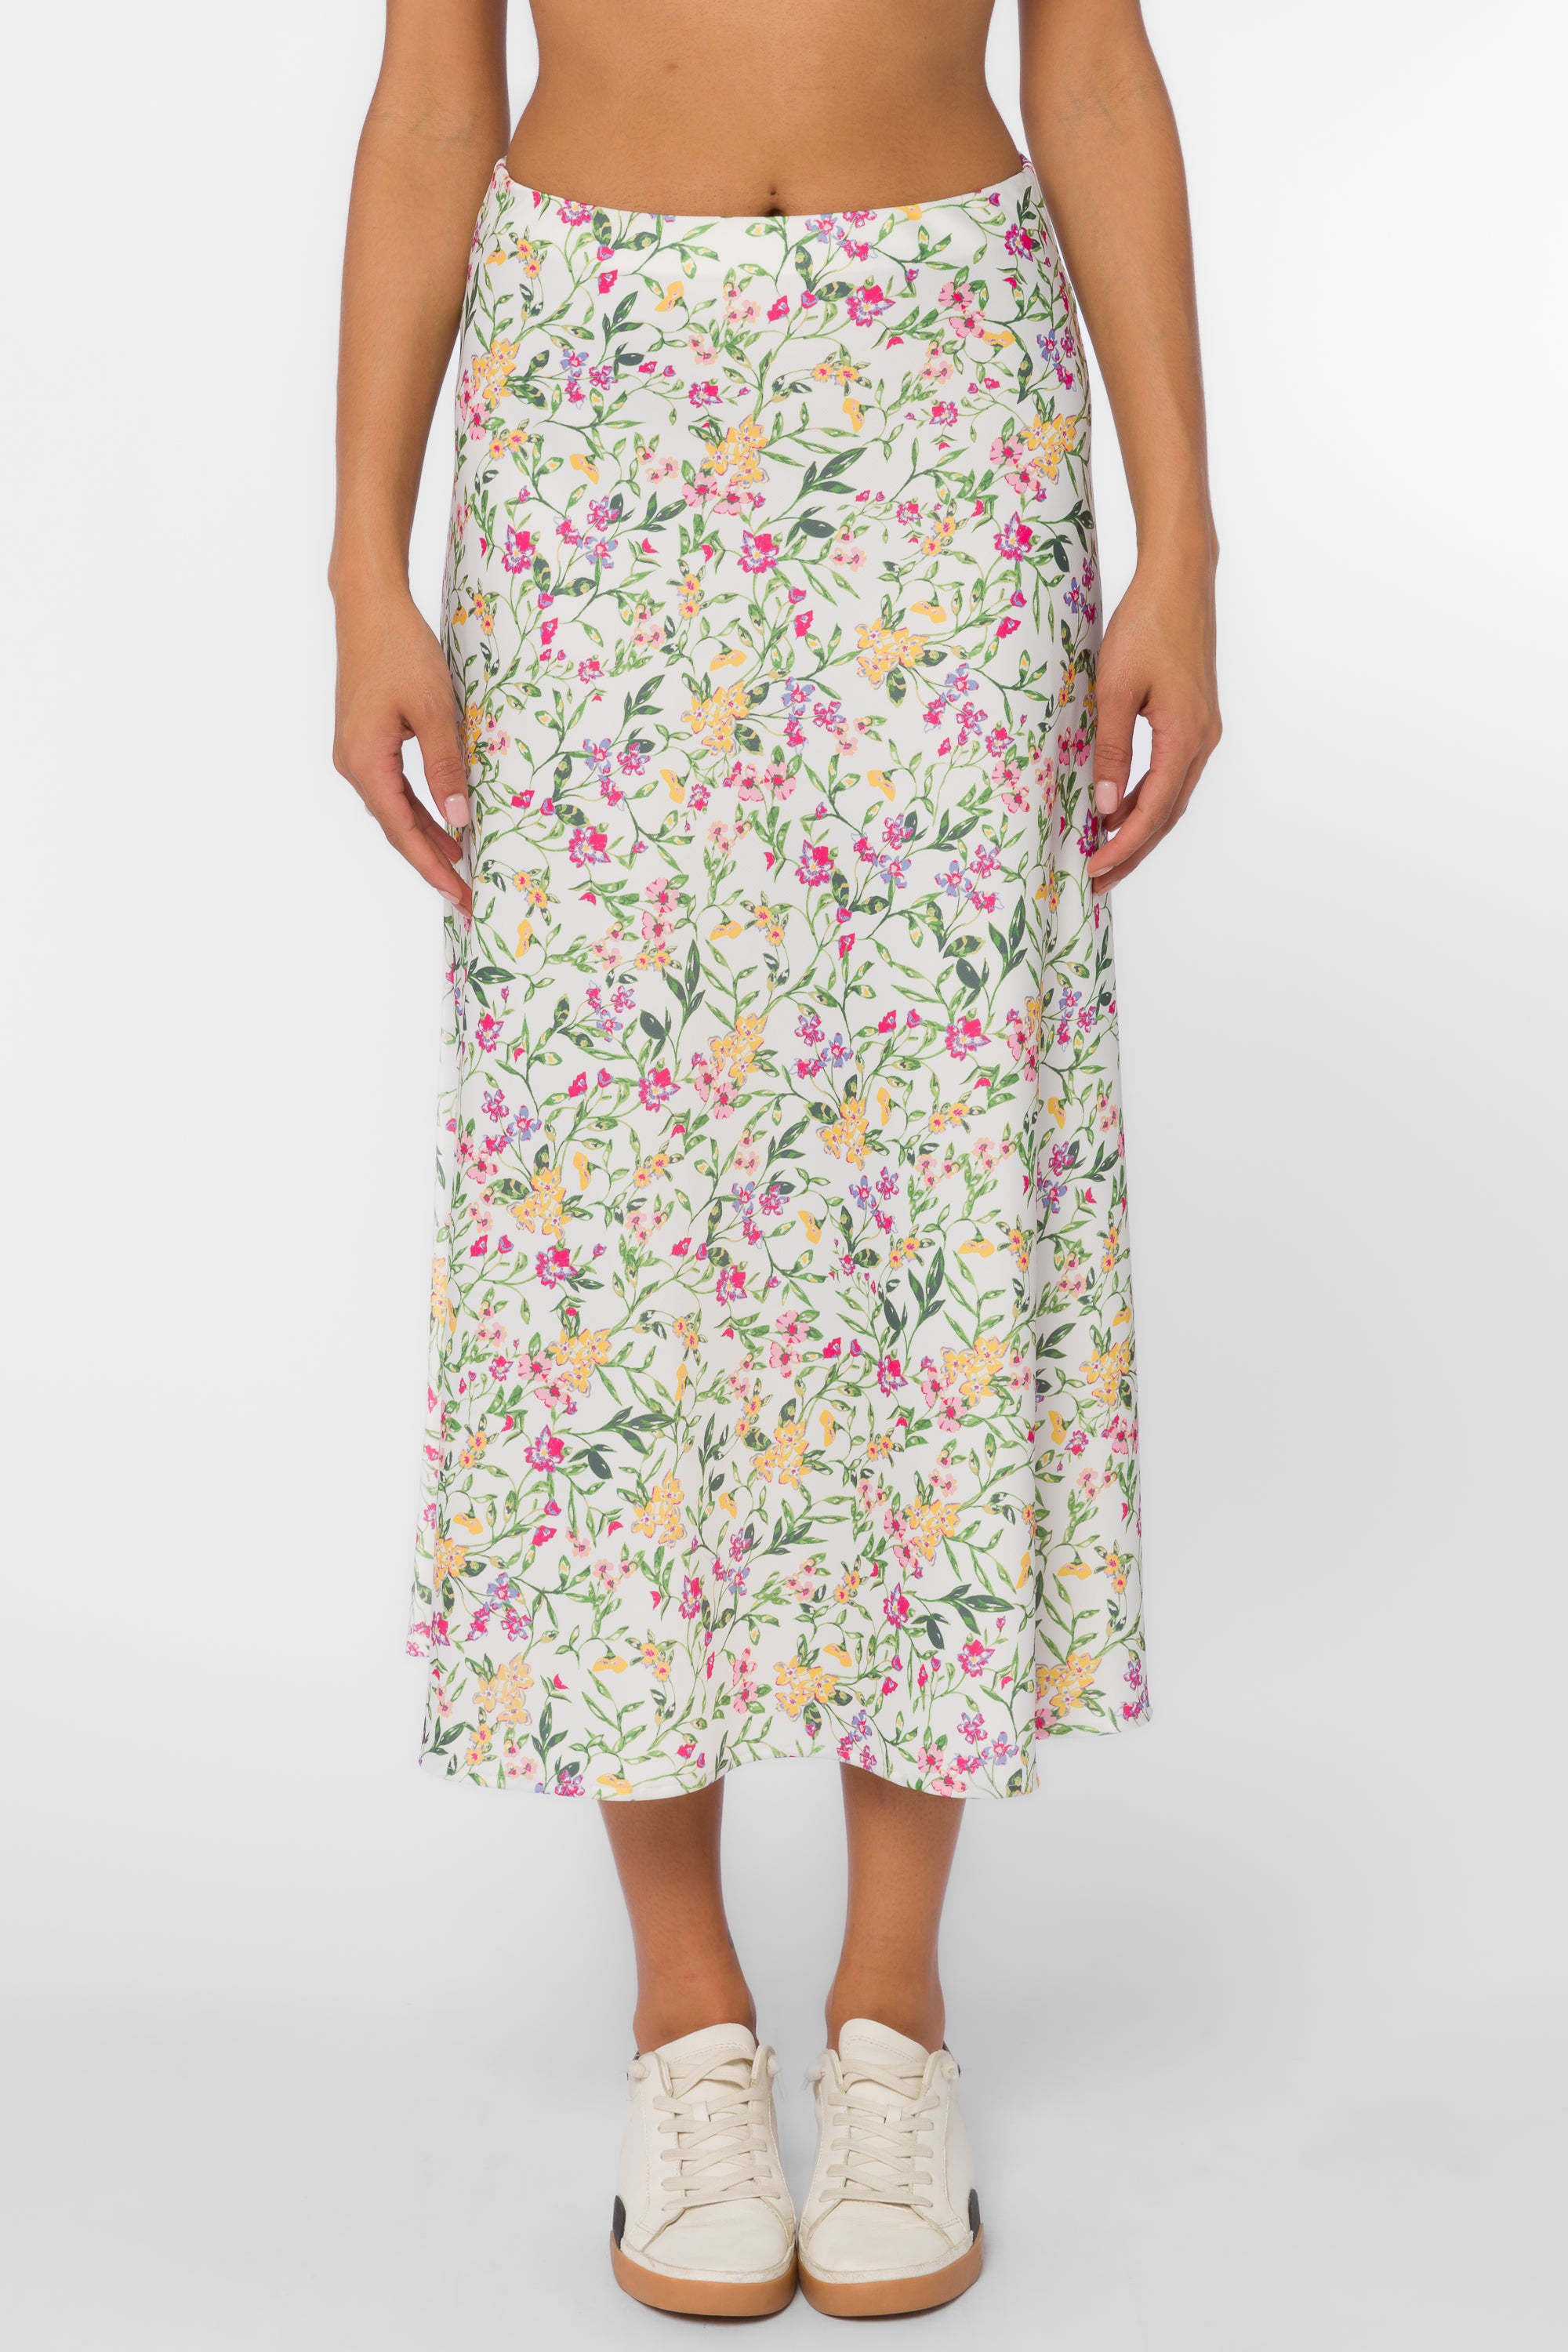 Gypsy Spring Ivy Slip Skirt - Bottoms - Velvet Heart Clothing